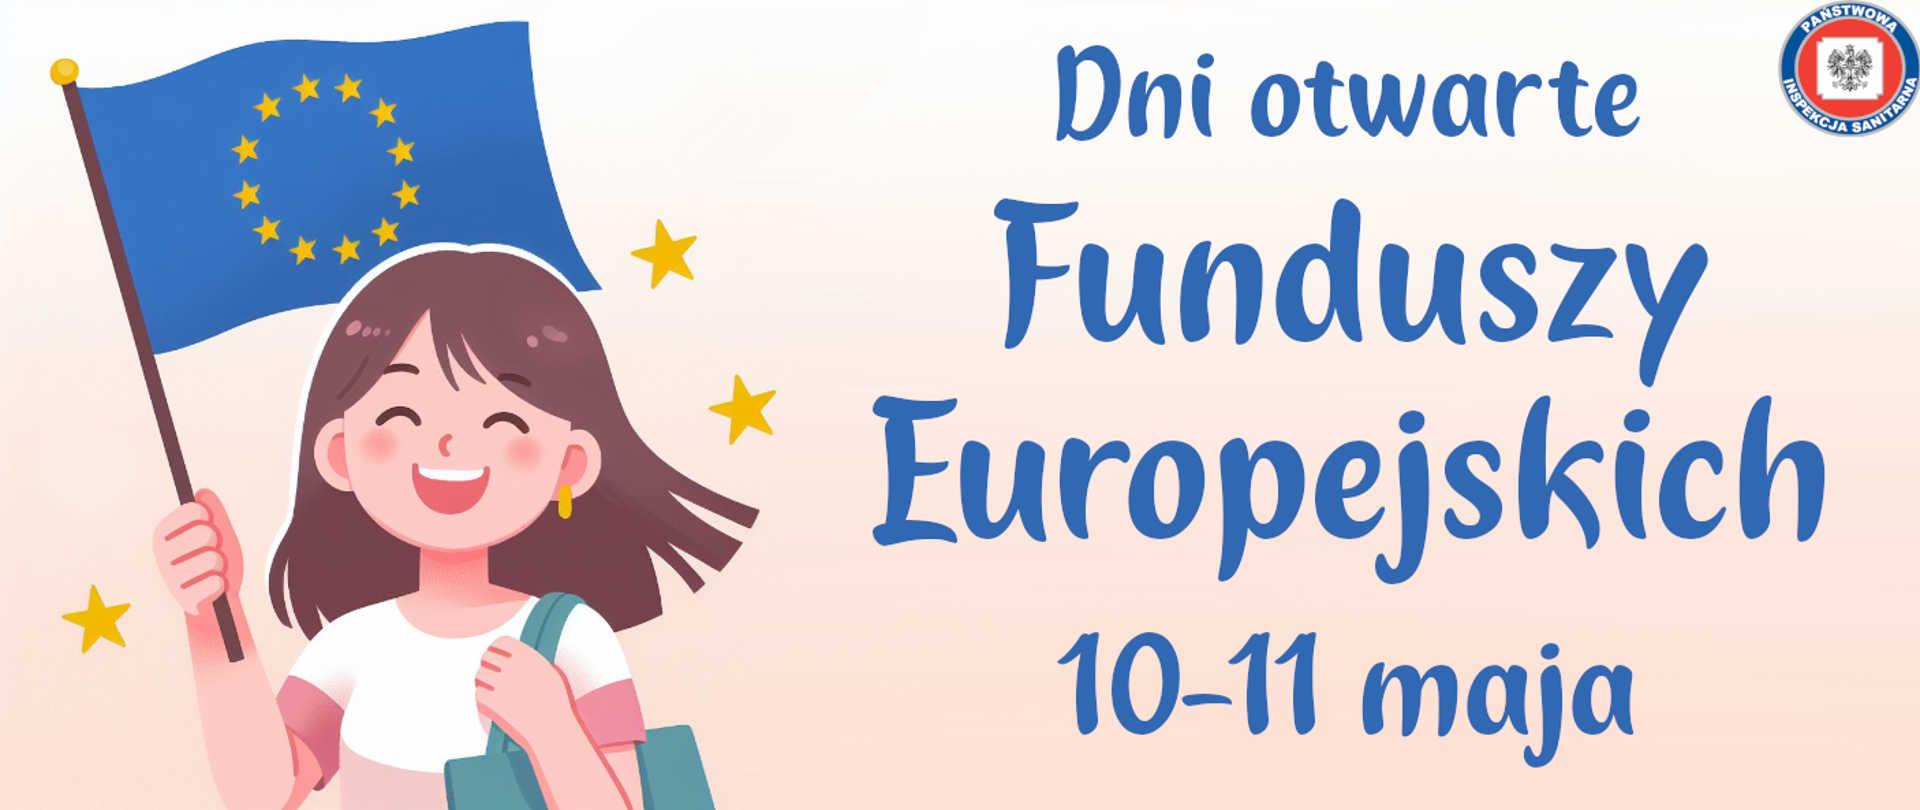 Dni otwarte Funduszy Europejskich